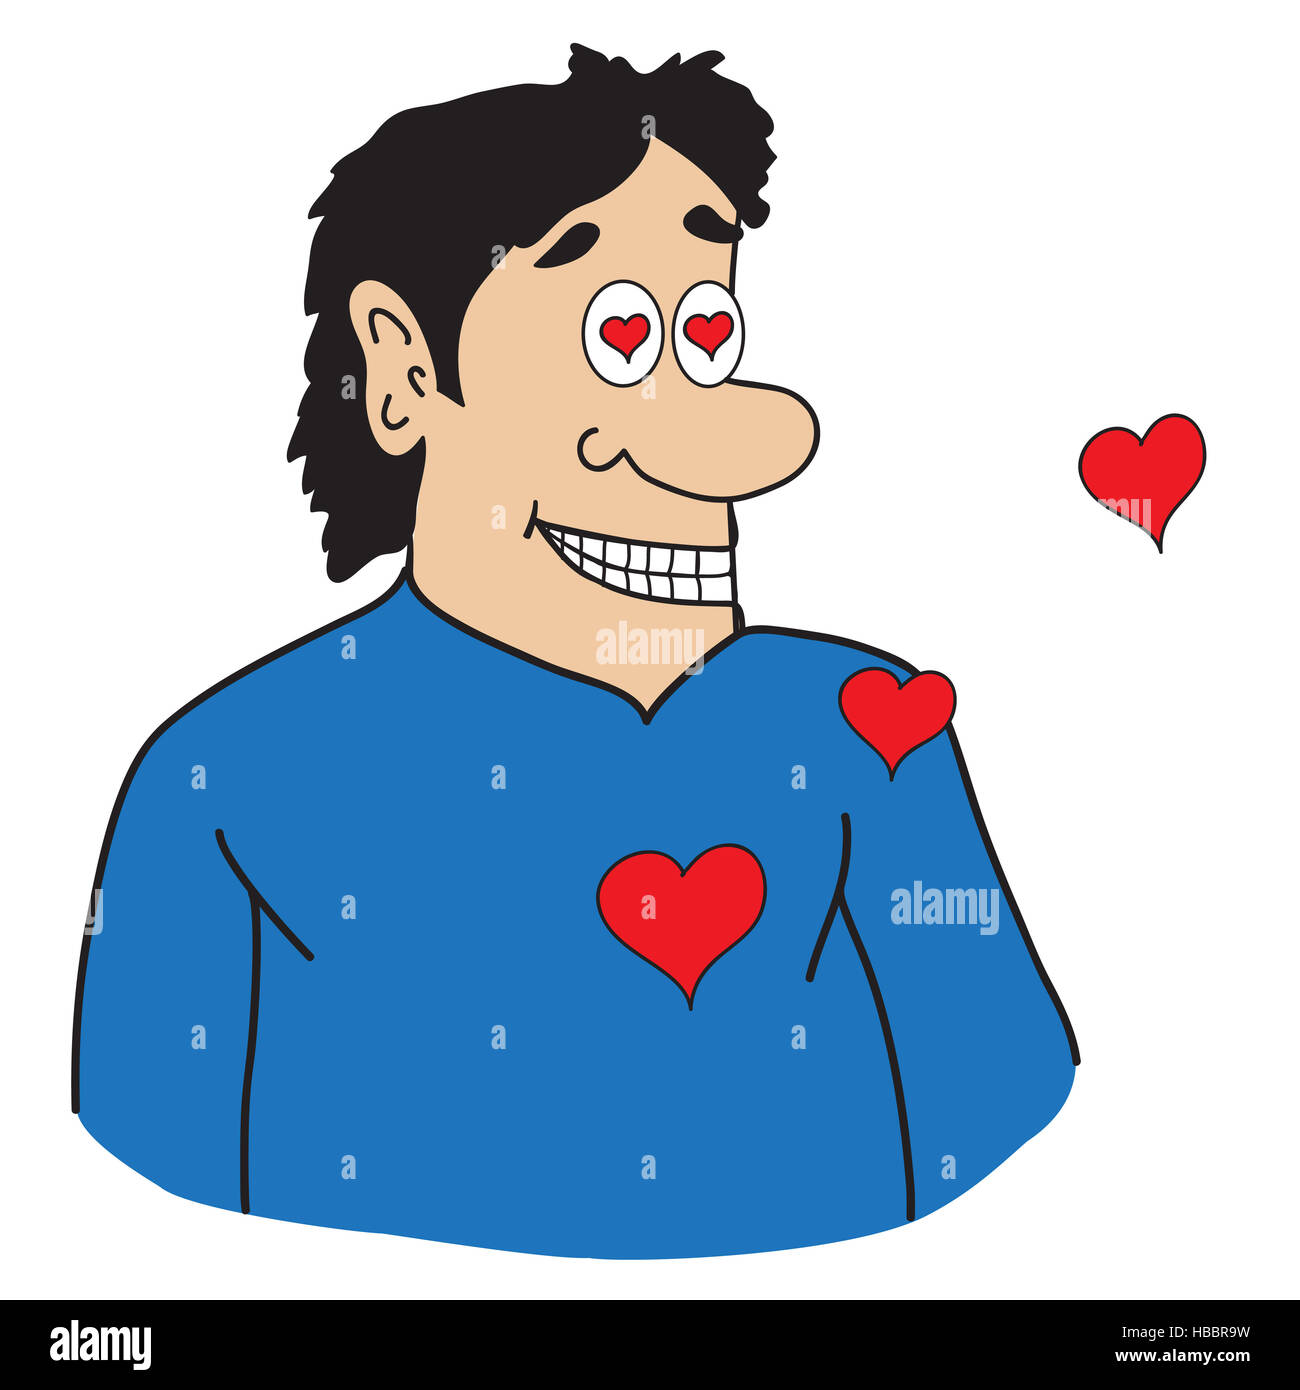 Caricatura del hombre enamorado fotografías e imágenes de alta resolución -  Alamy